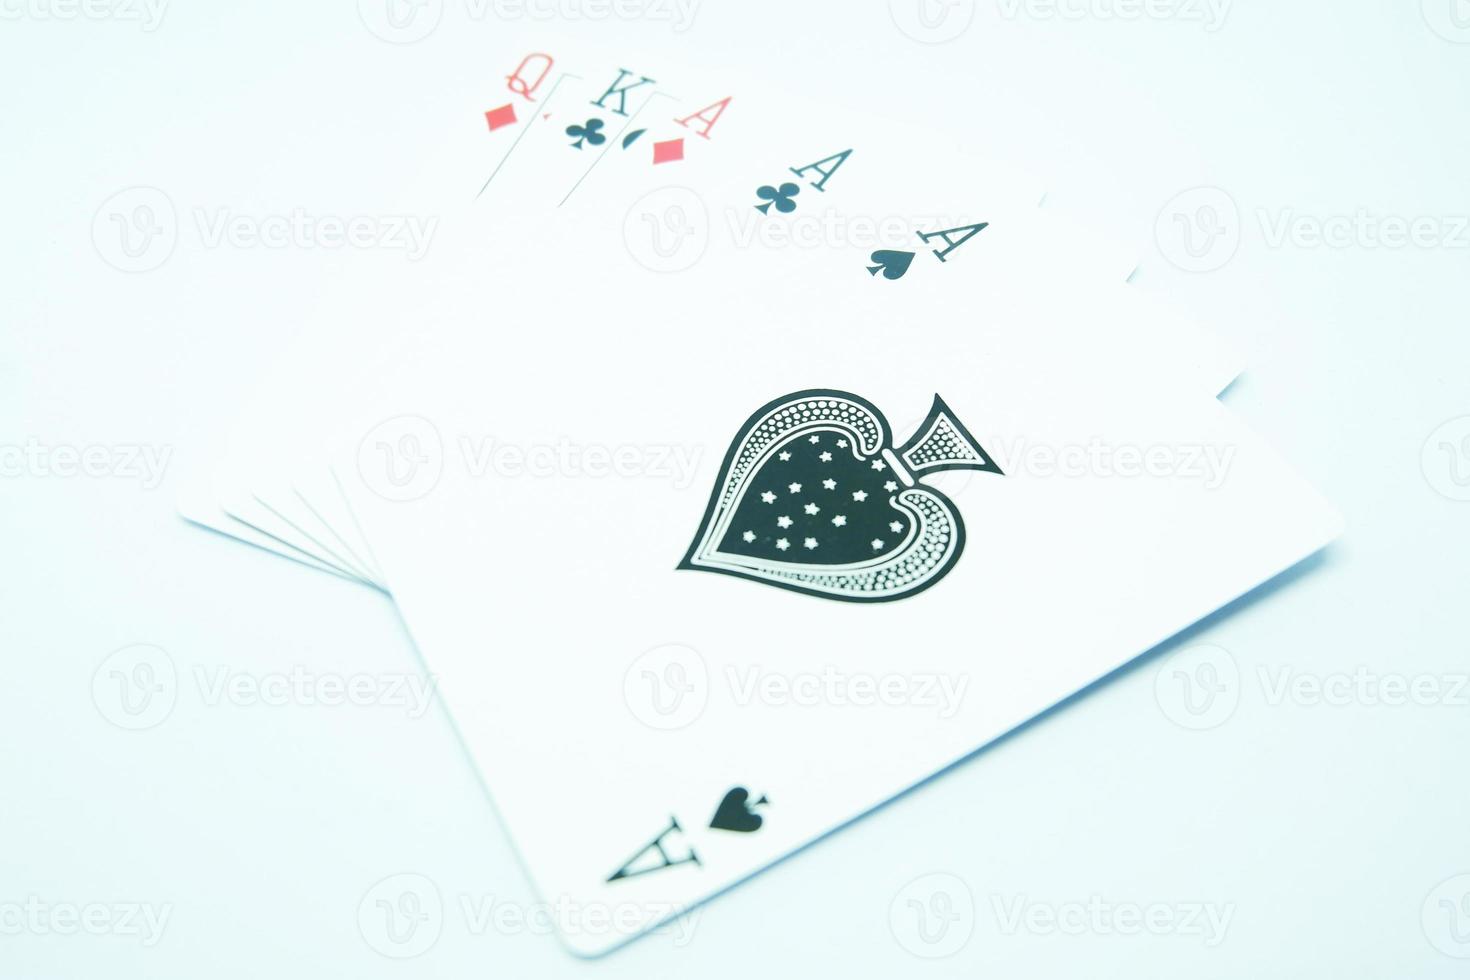 drie van vriendelijk, met drie van azen , koning en koningin in poker spel foto